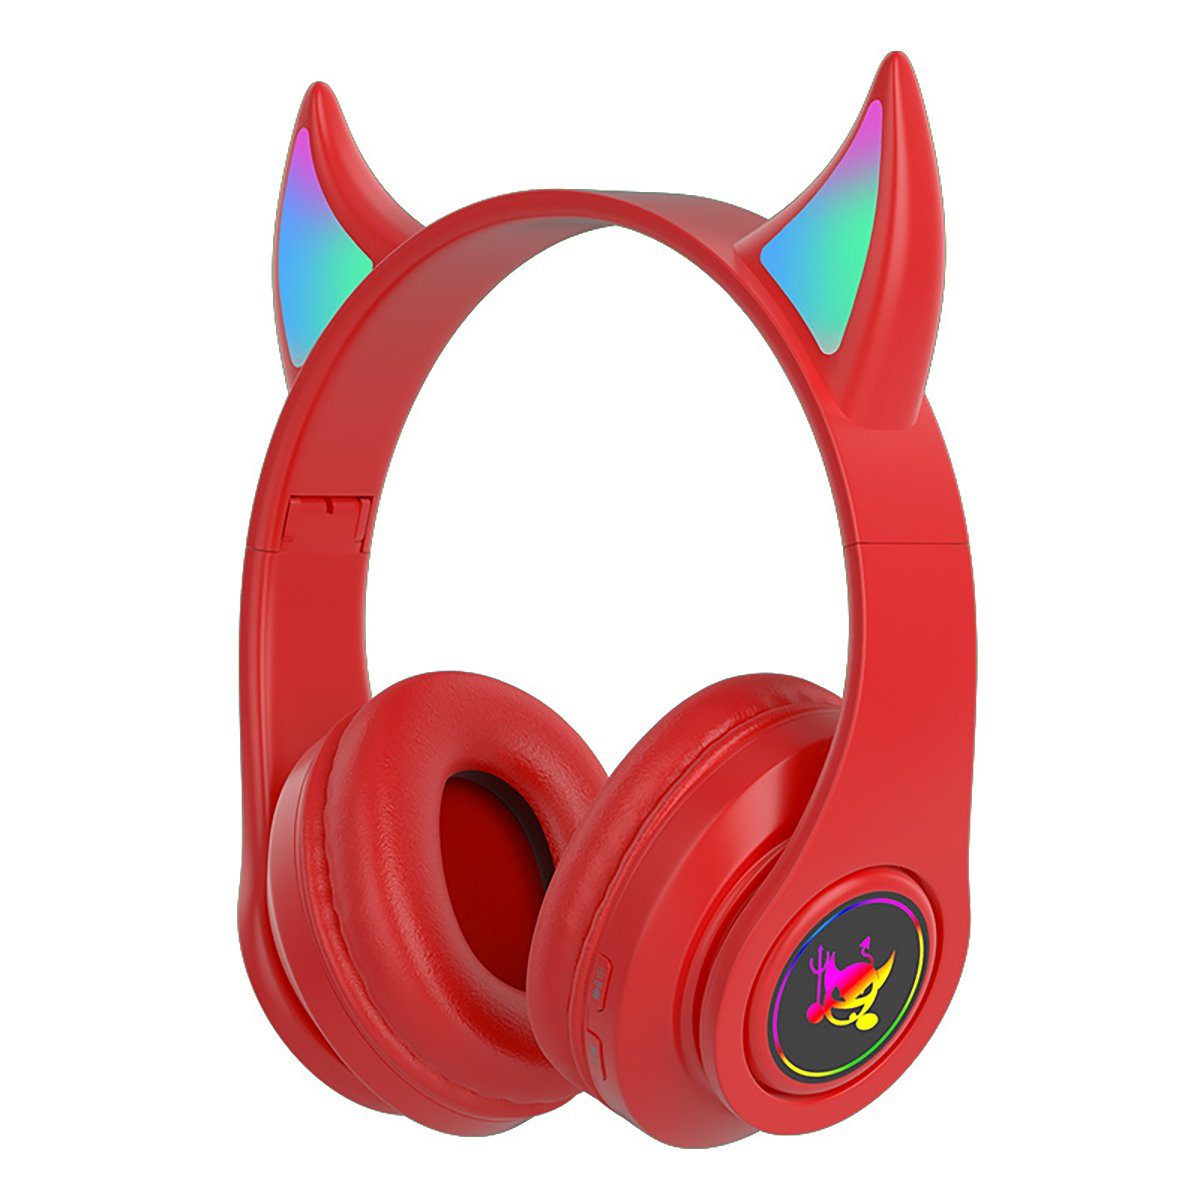 (Kabelloses Gaming-Headset, Insma On-Ear-Kopfhörer LED-Licht) Stero Kopfhörer bluetooth 5.0 Rot